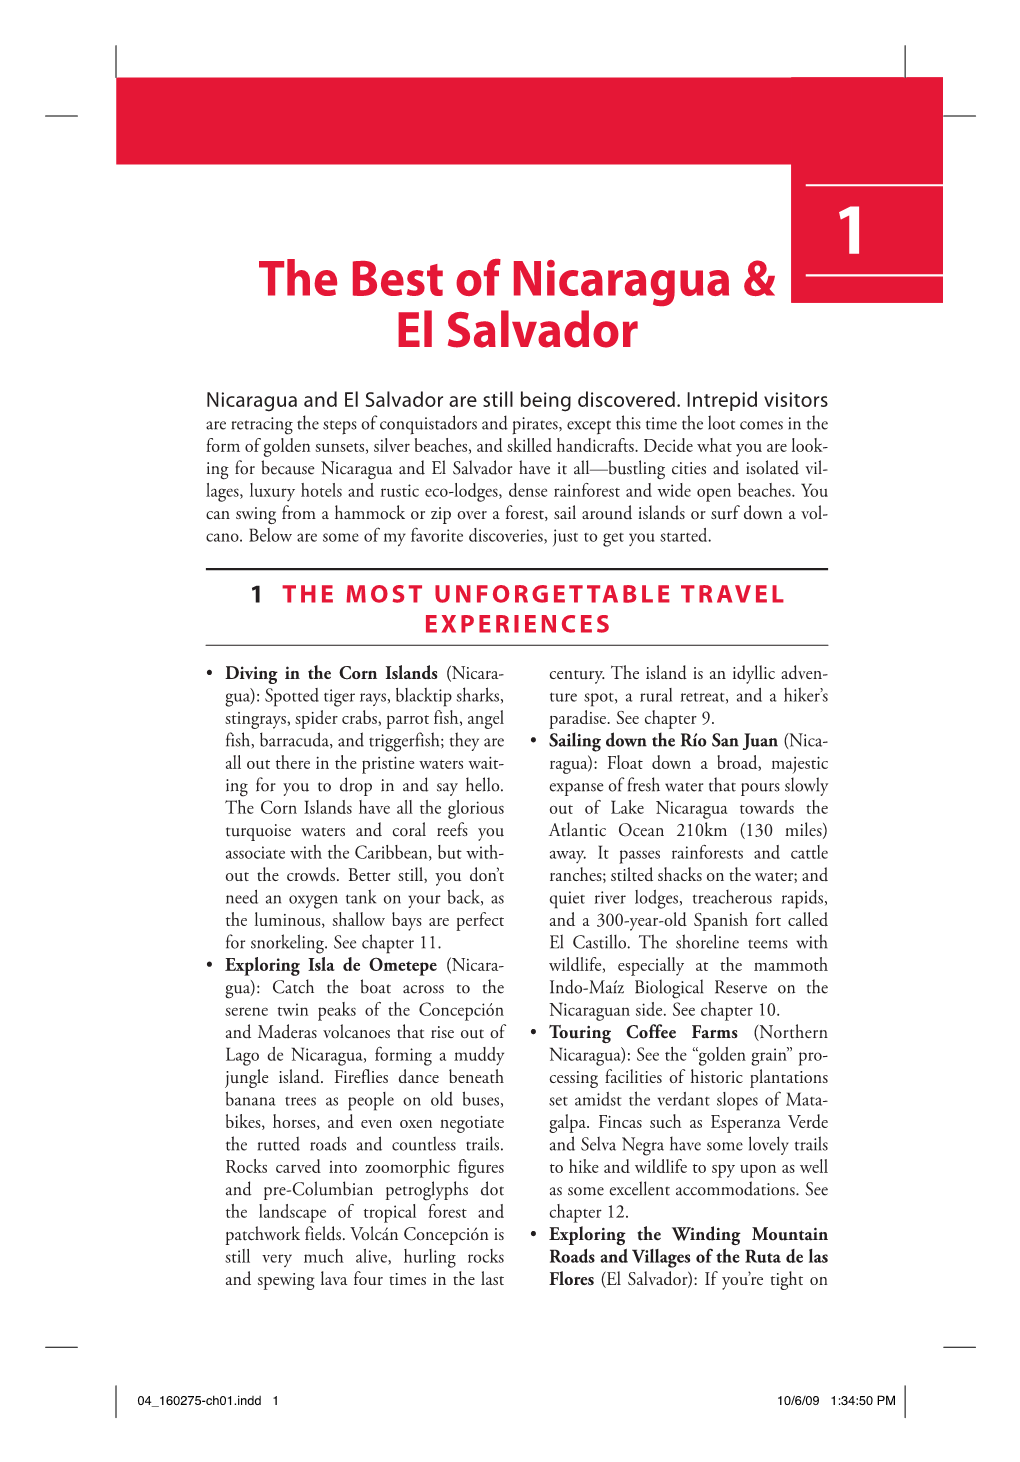 The Best of Nicaragua & El Salvador